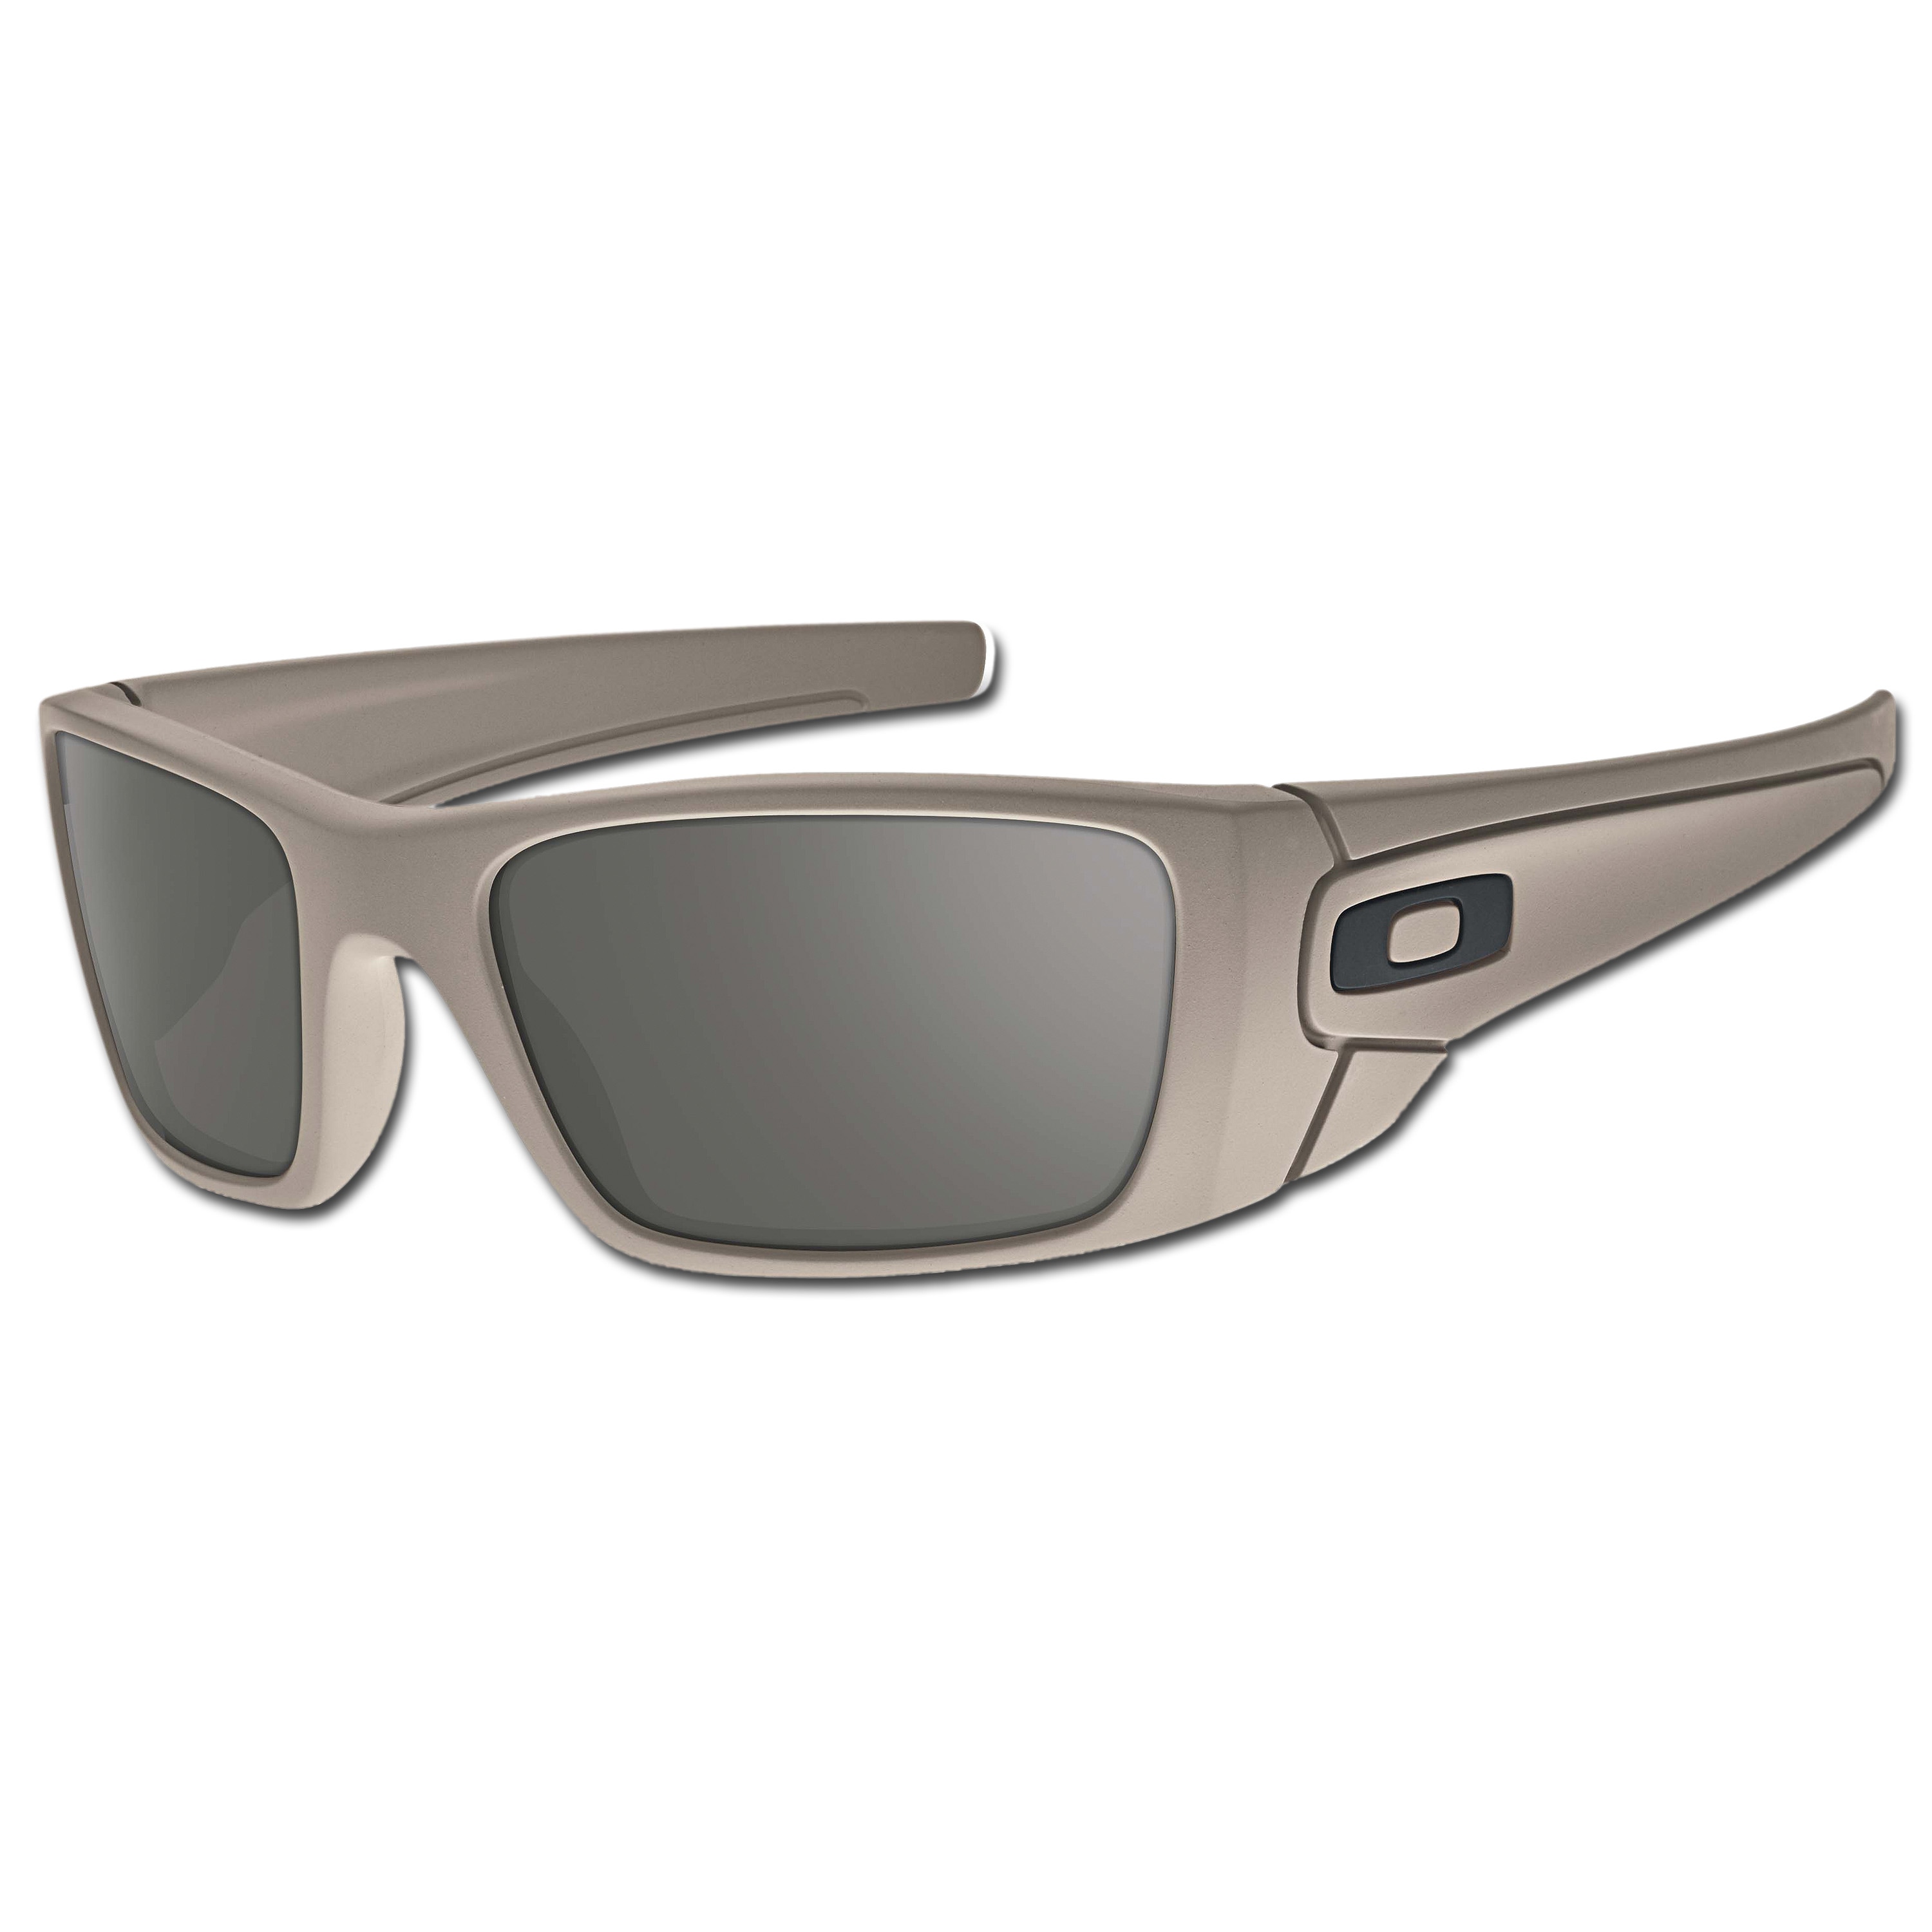 Sun Glasses Oakley Fuel Cell desert | Sun Glasses Oakley Fuel Cell desert |  Sunglasses | Eyewear | Glasses/Optics | Equipment